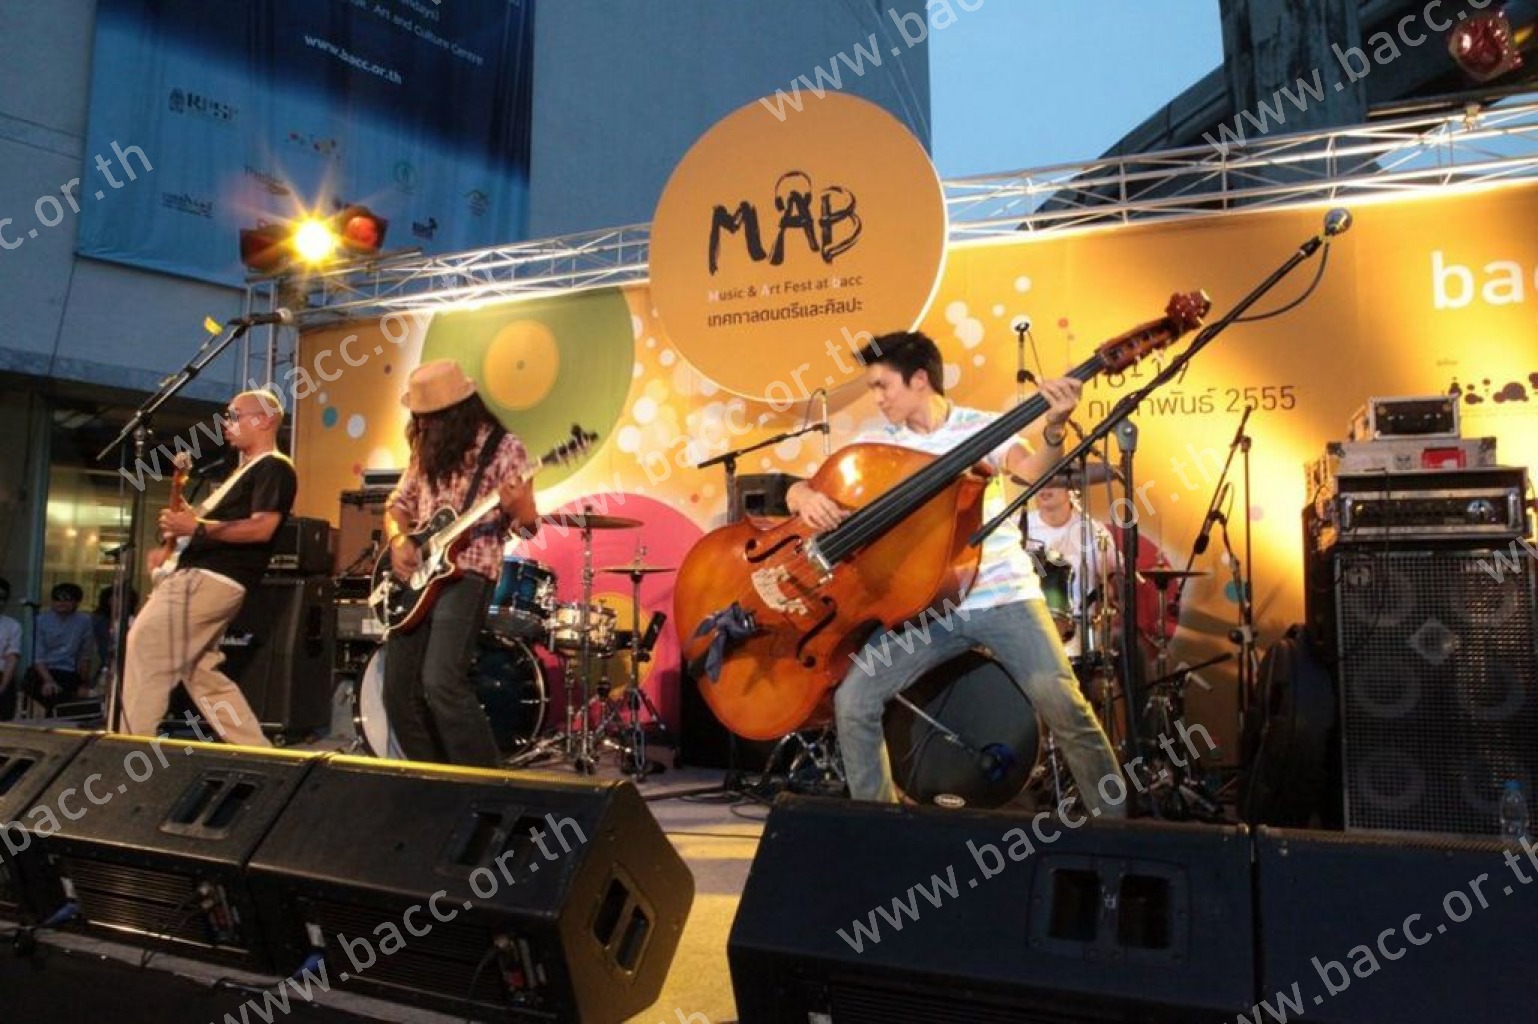 โครงการเทศกาลดนตรี Music & Art Fest at bacc 2012 : MAB ครั้งที่ 1